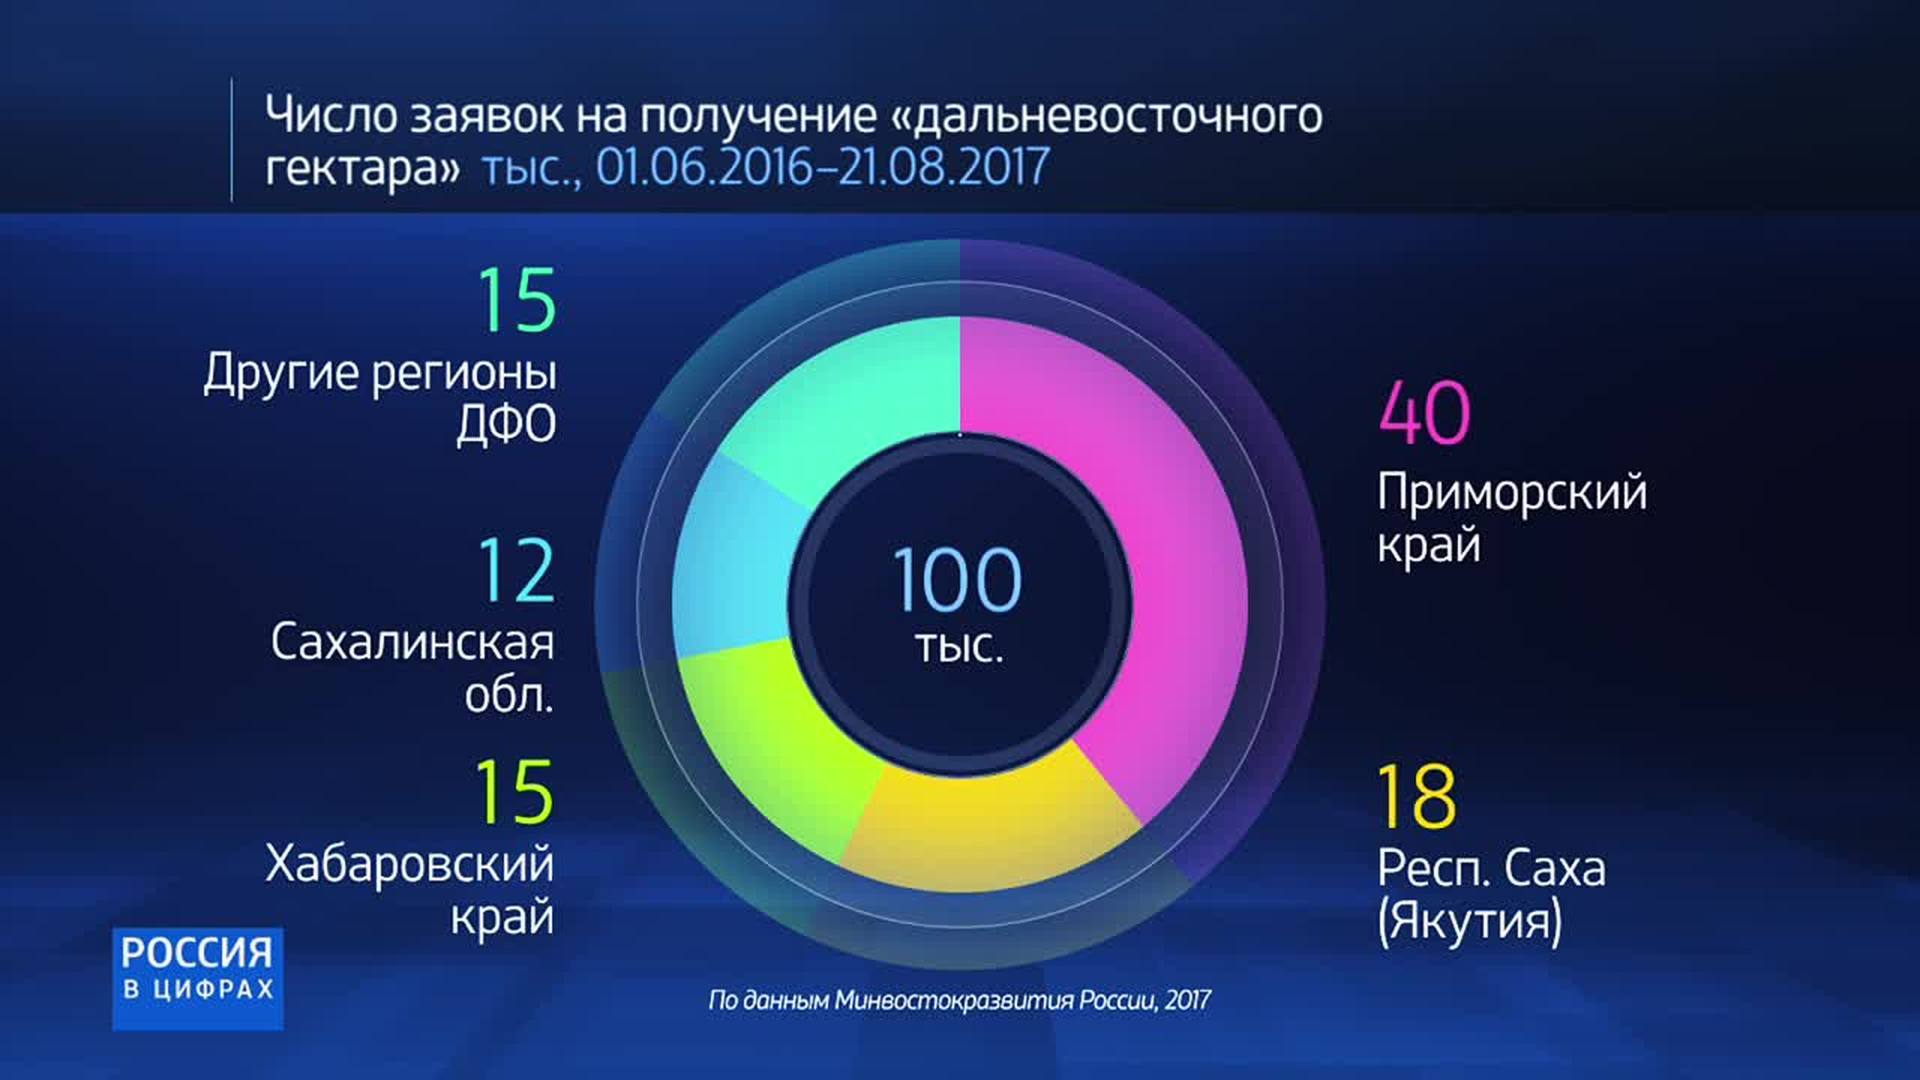 Россия в цифрах презентация